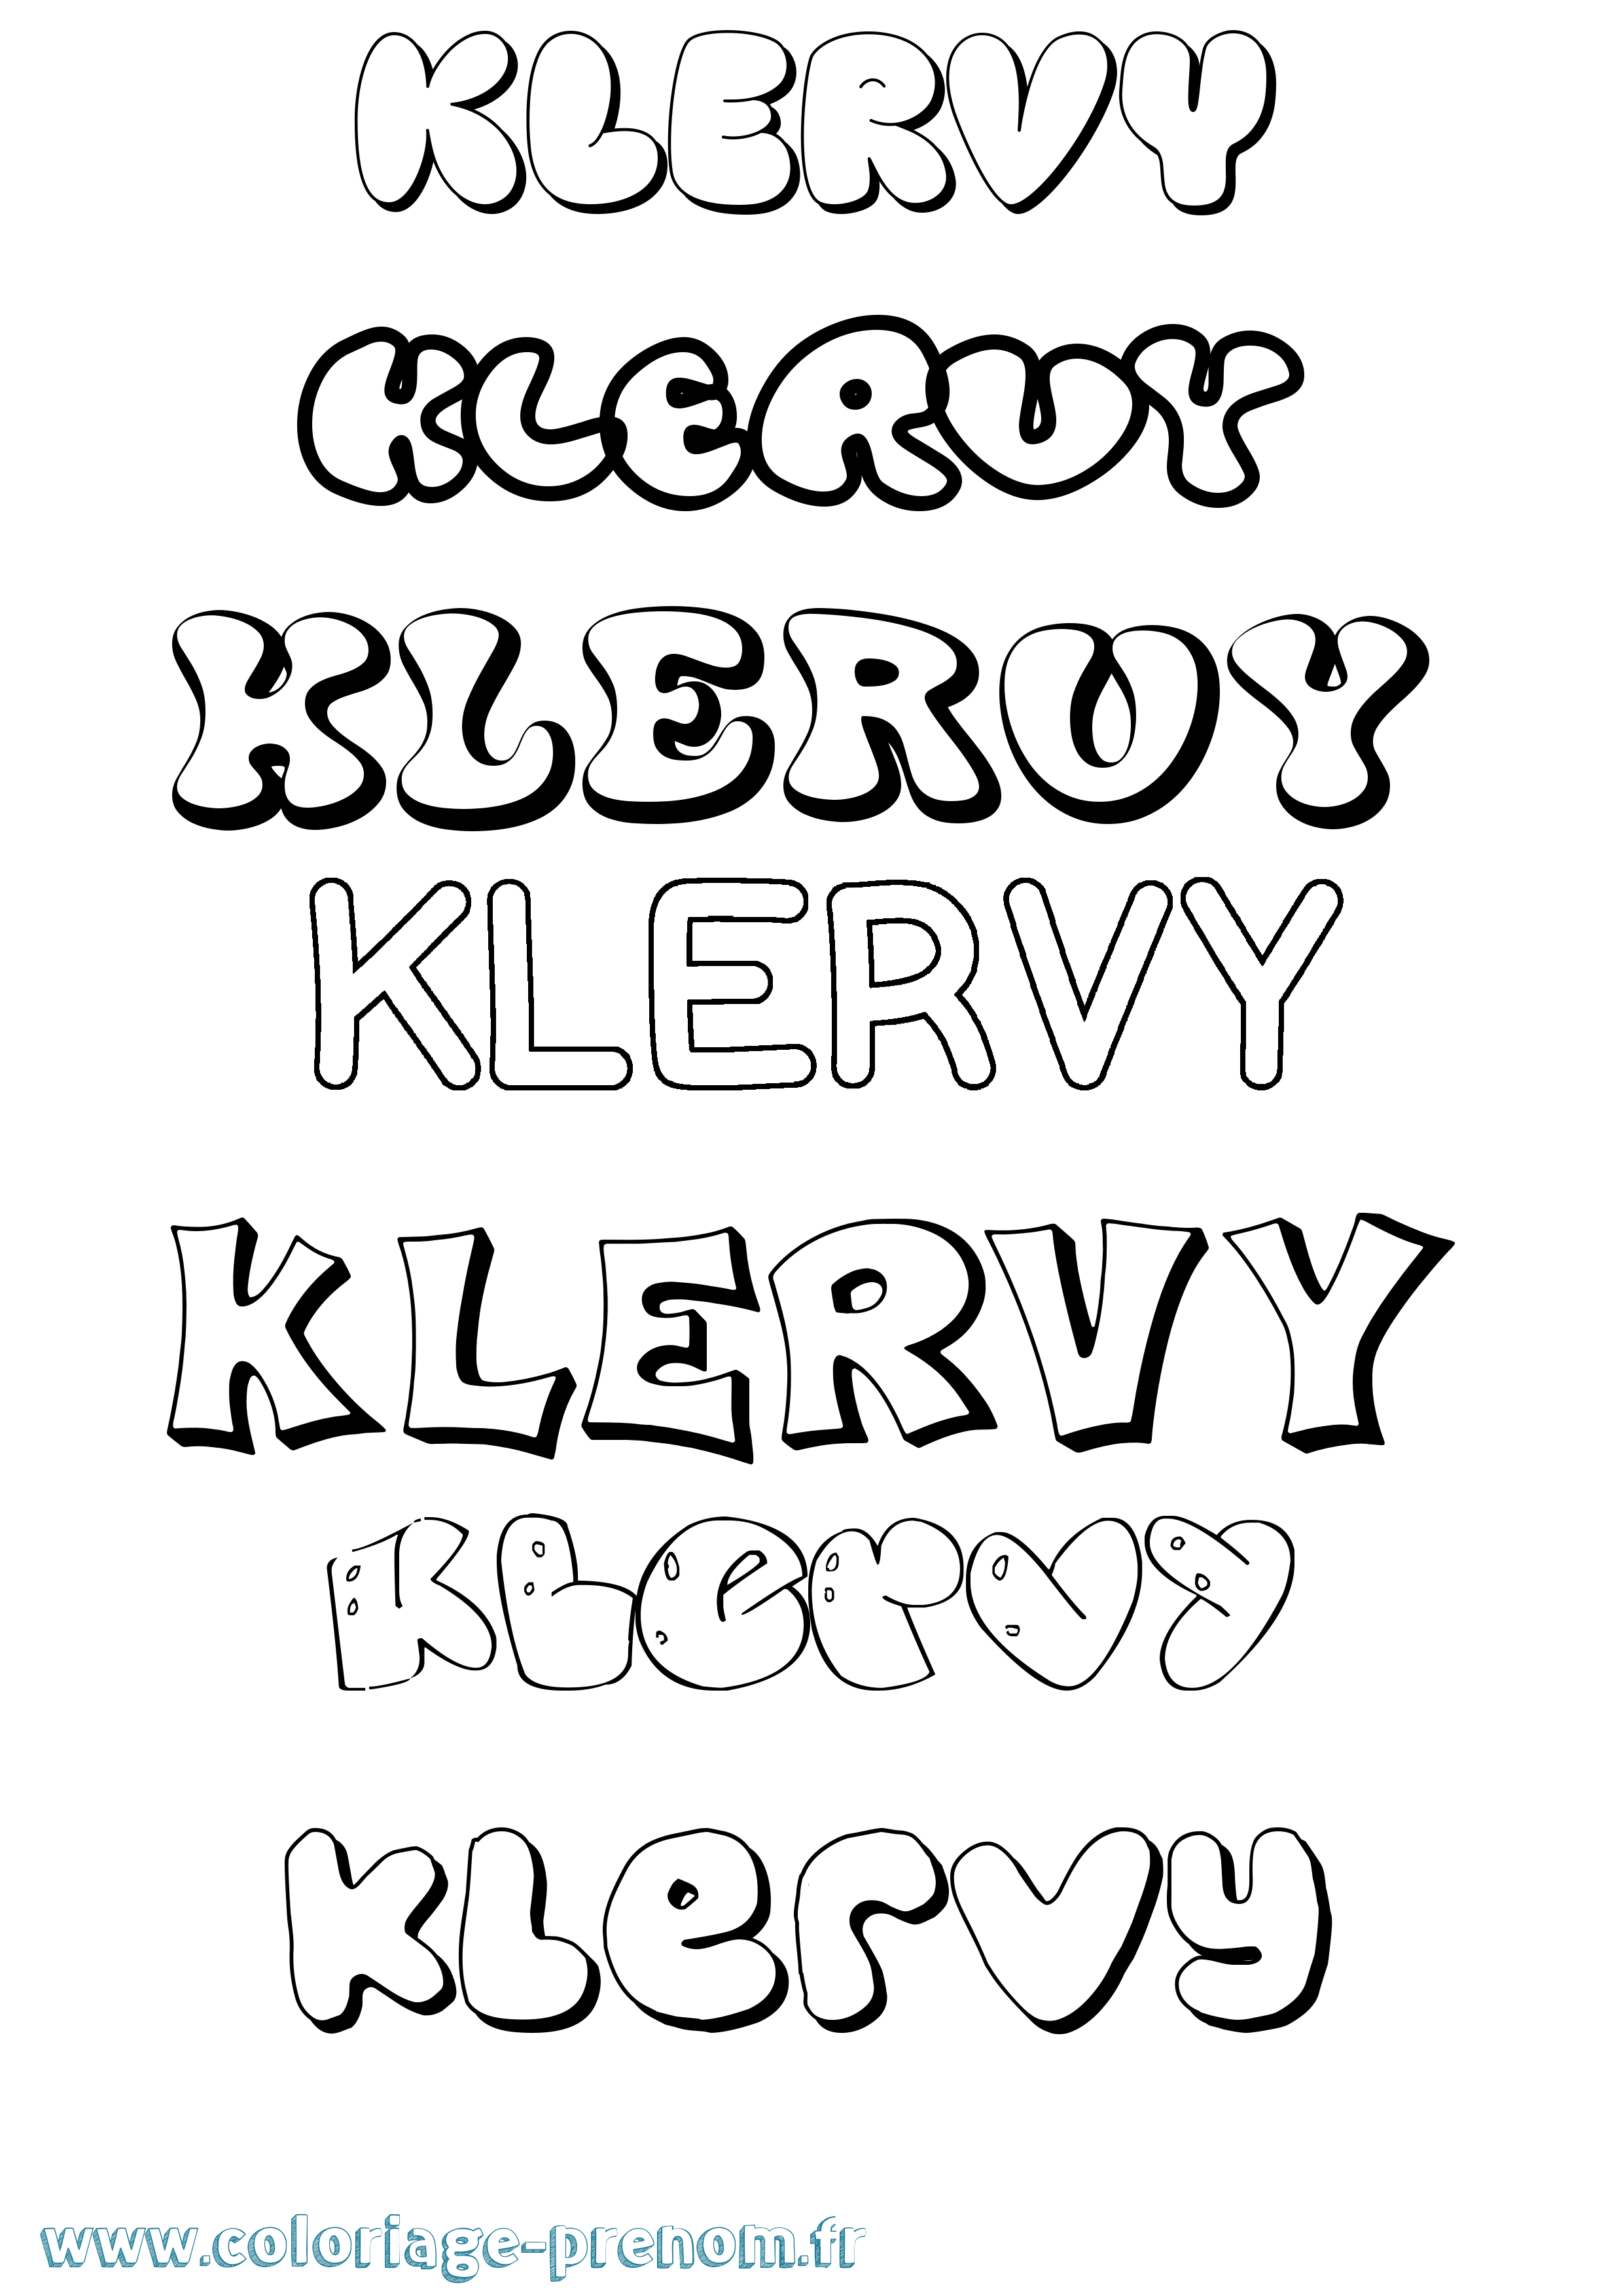 Coloriage prénom Klervy Bubble